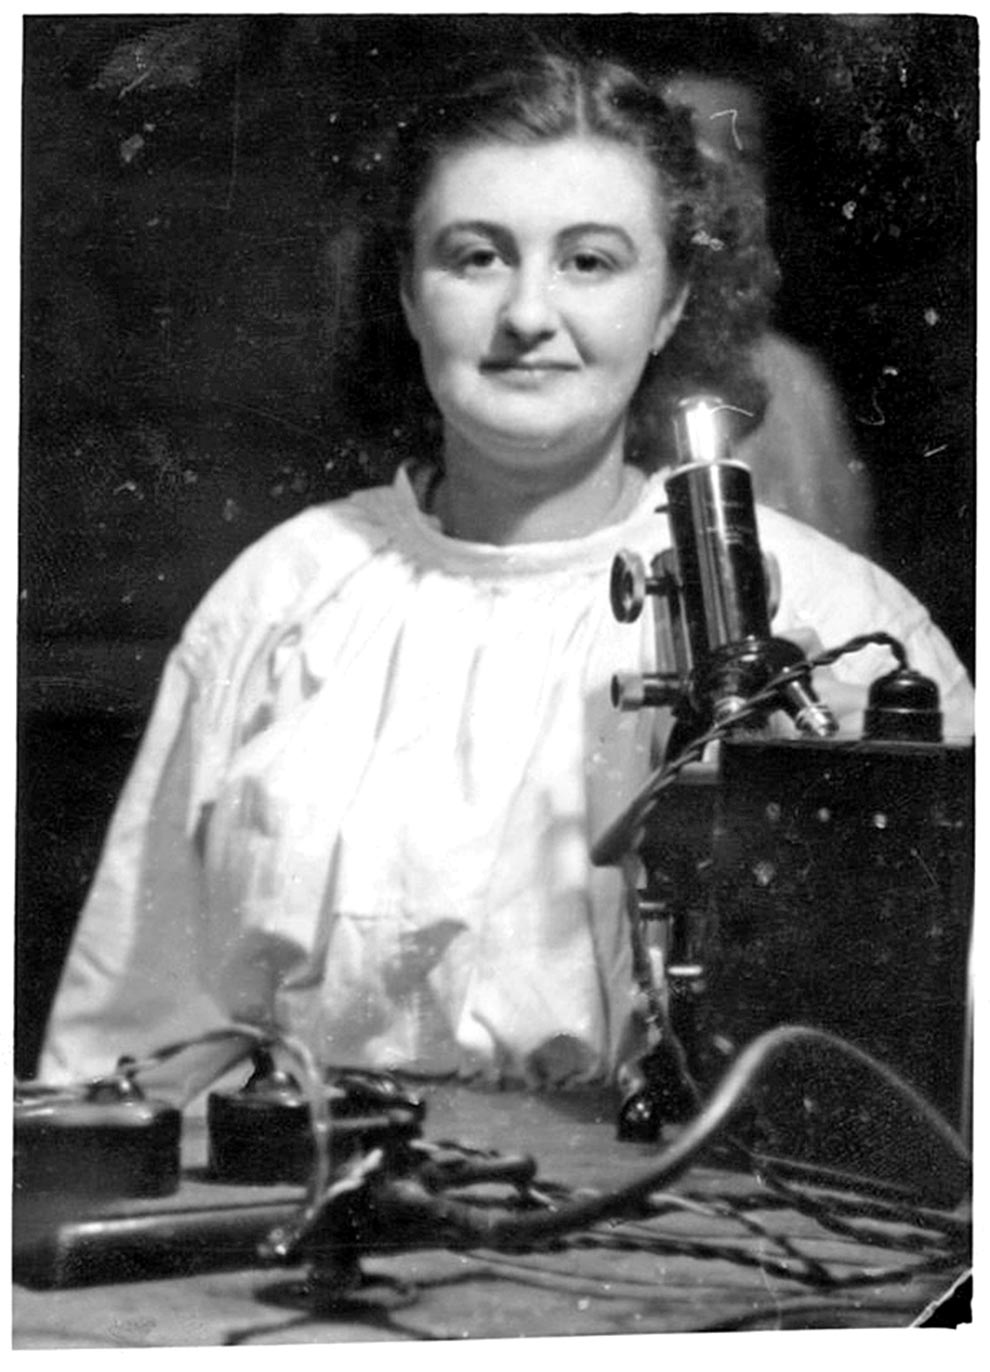 June Almeida nos anos 1950, bem antes de sua descoberta que hoje a tornou conhecida em todo o mundo.